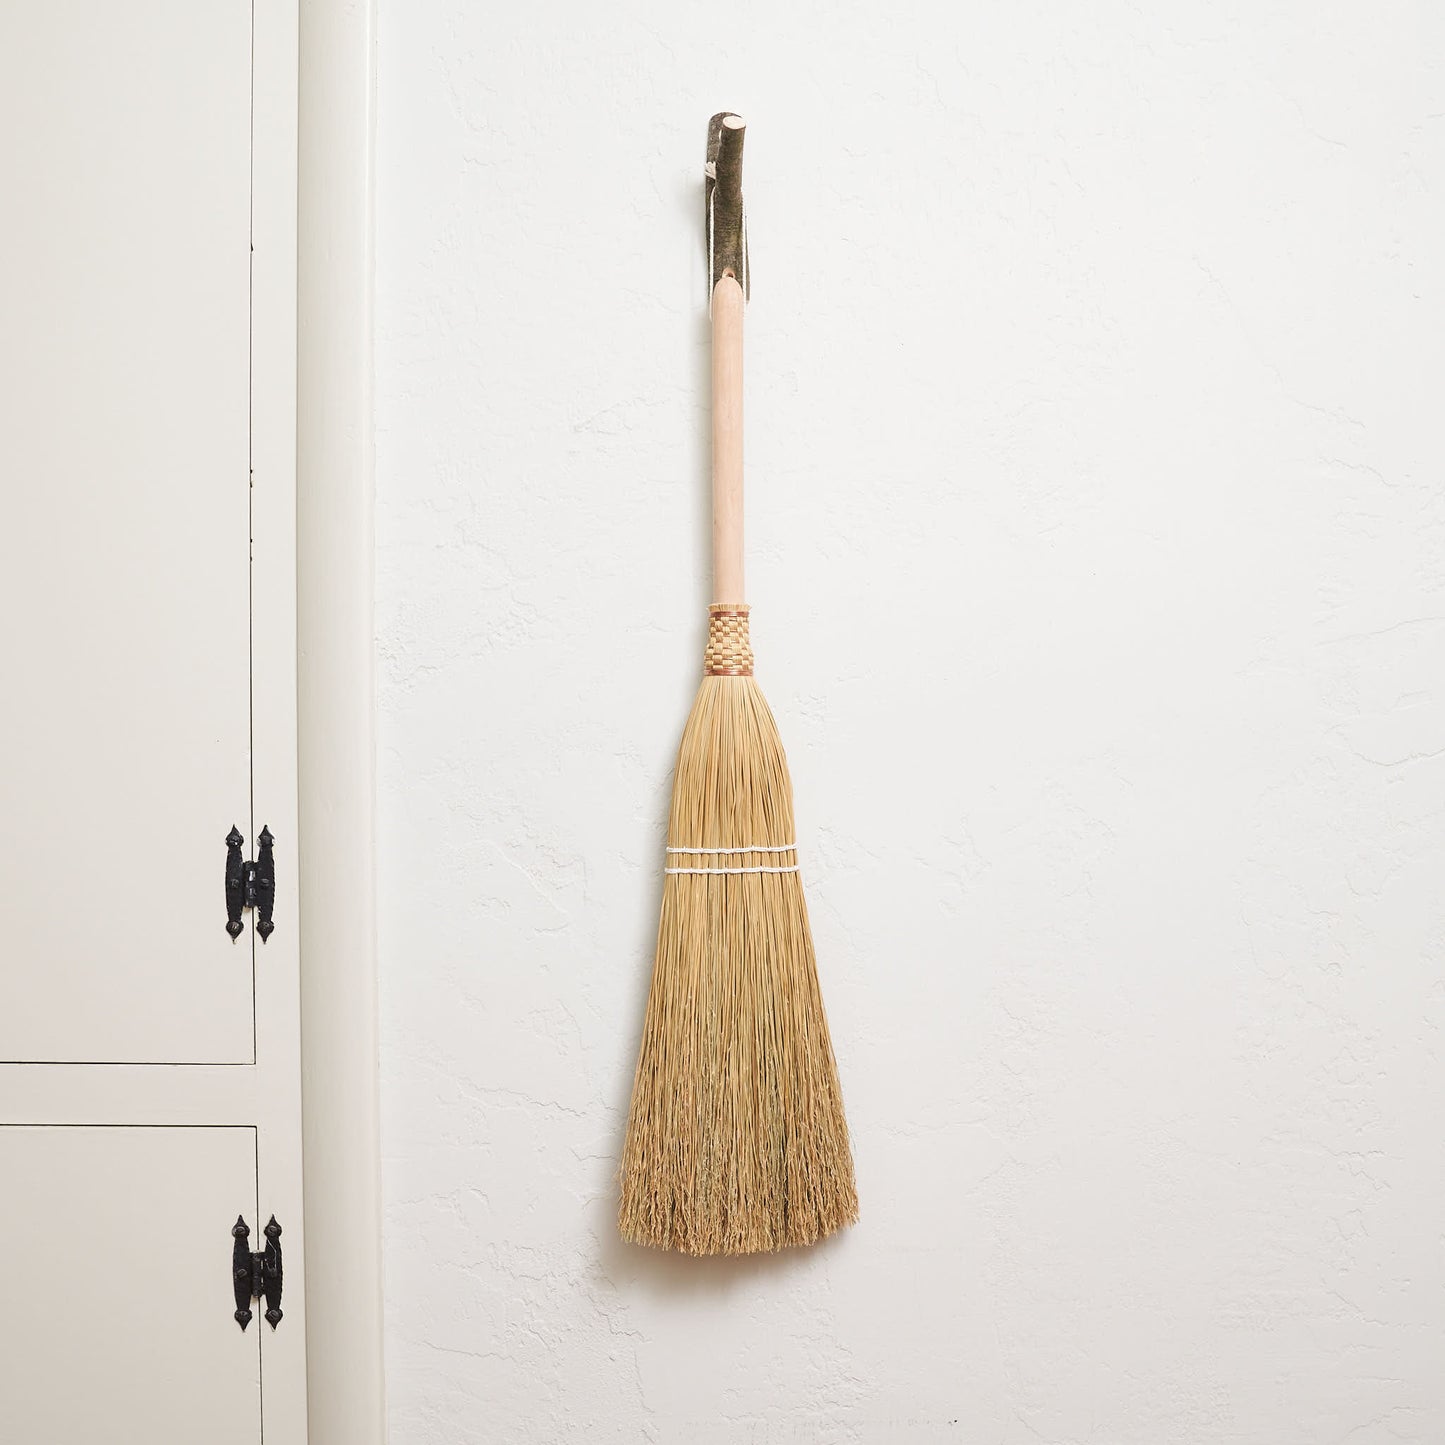 Shaker Broom, Natural Bristle